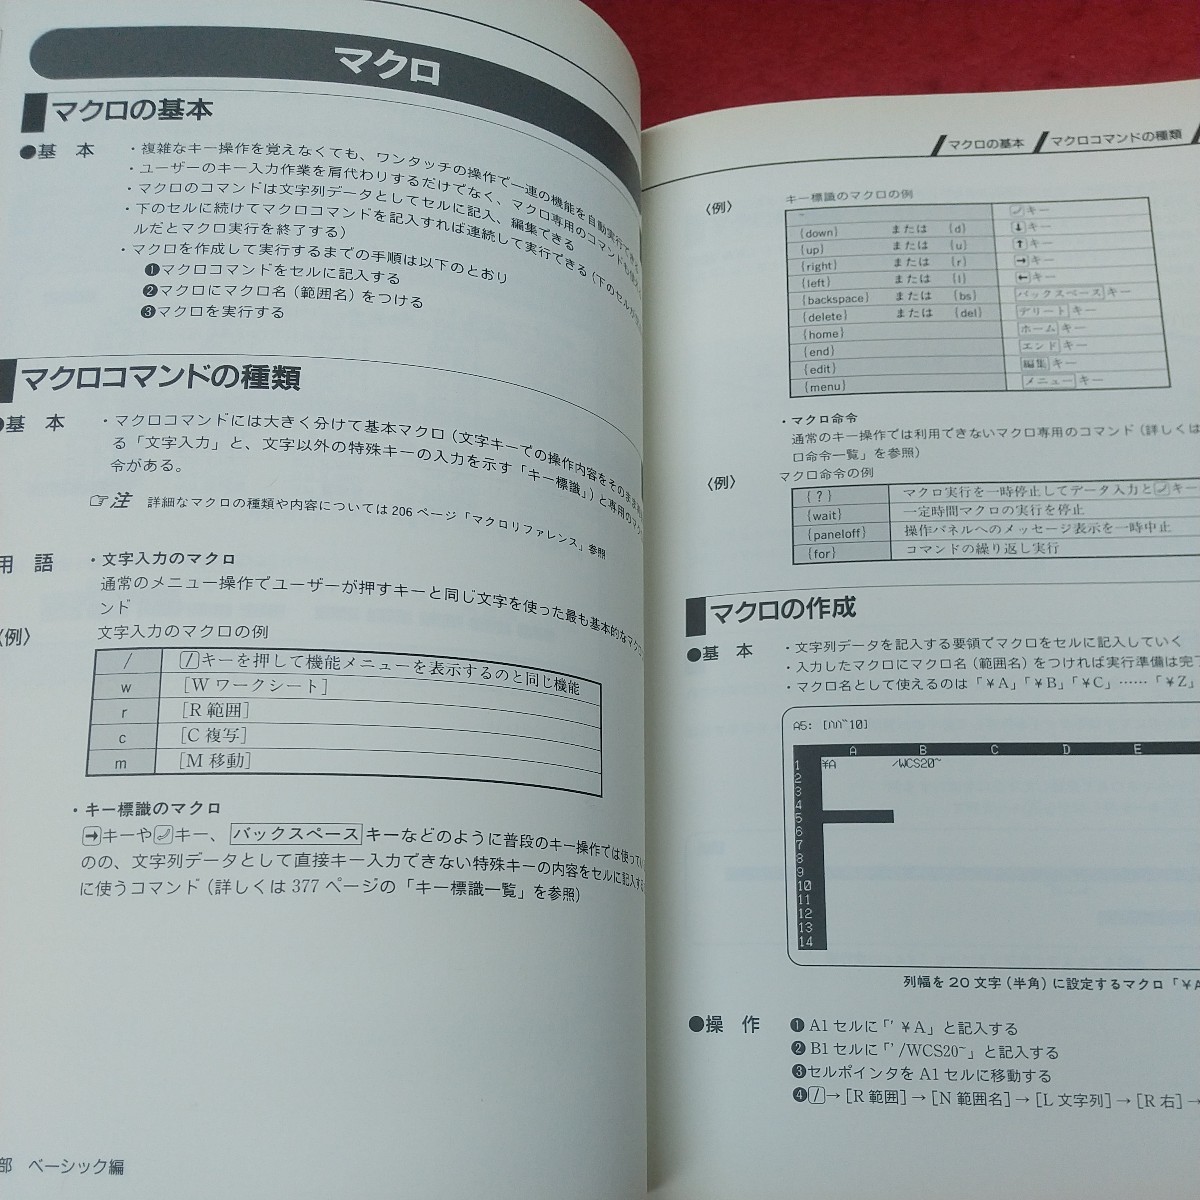 e-217 ※8 Lotus 1-2-3 ブック 著者 坪井達夫 中井紀之 1993年3月1日 初版発行 アスキー コンピューター ソフトウェア 解説 参考書 関数_画像6